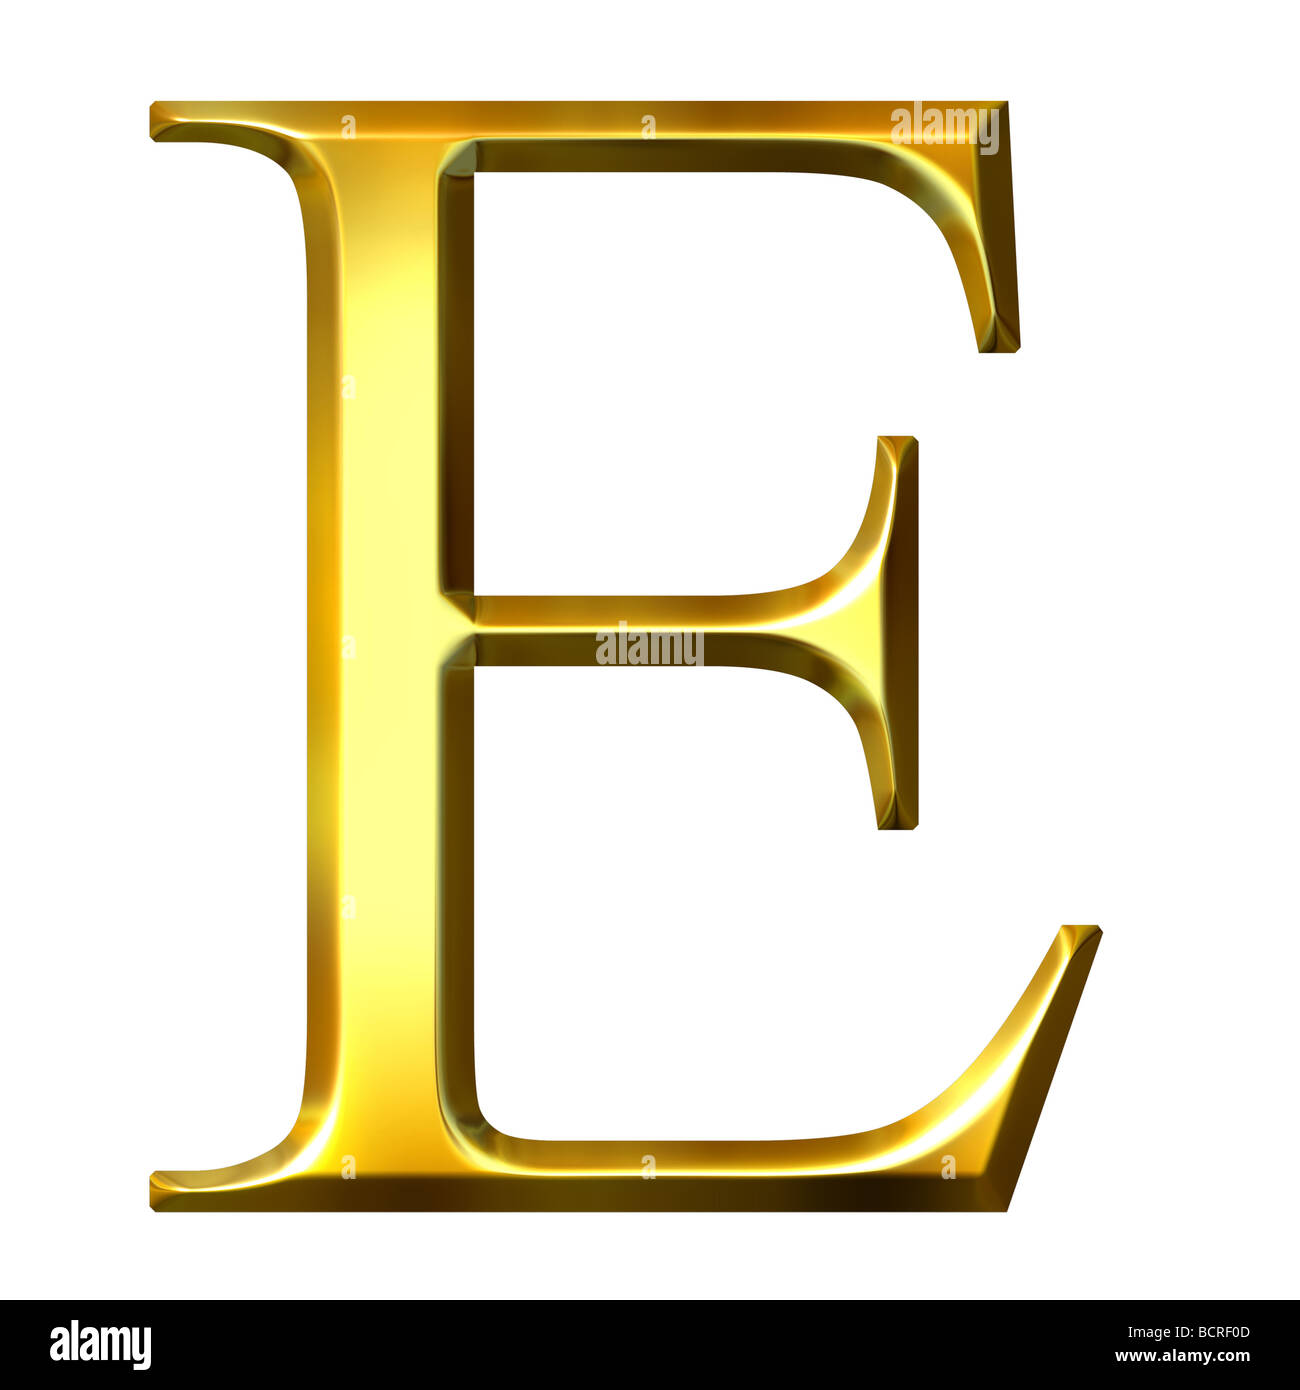 3d golden Greek letter epsilon Stock Photo - Alamy